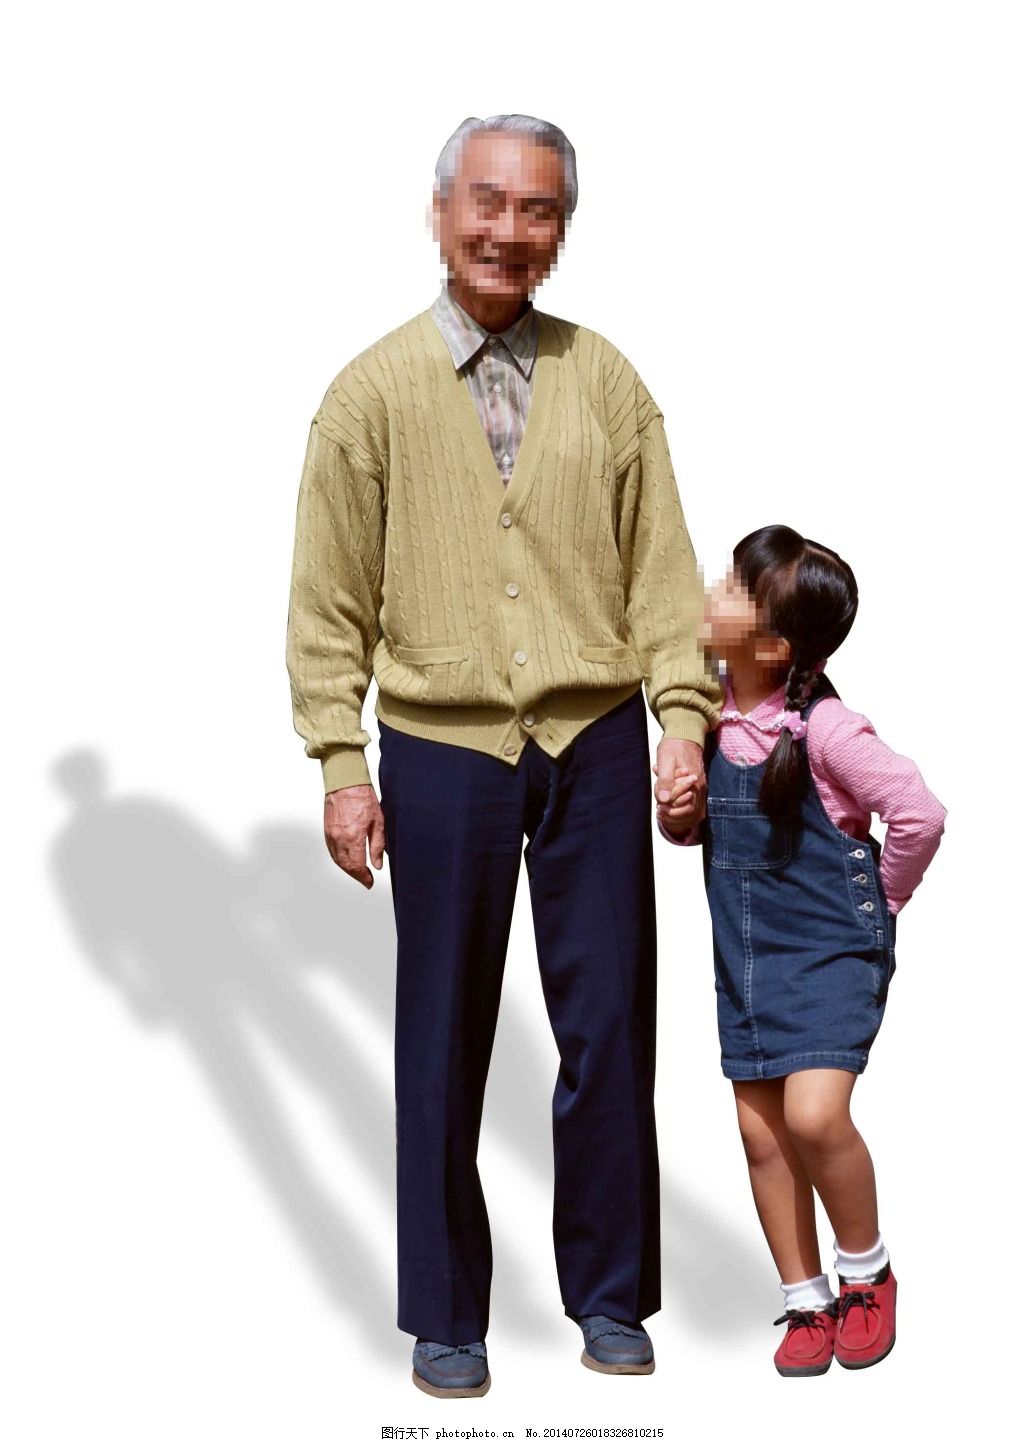 老人与小孩图片素材-编号15722641-图行天下